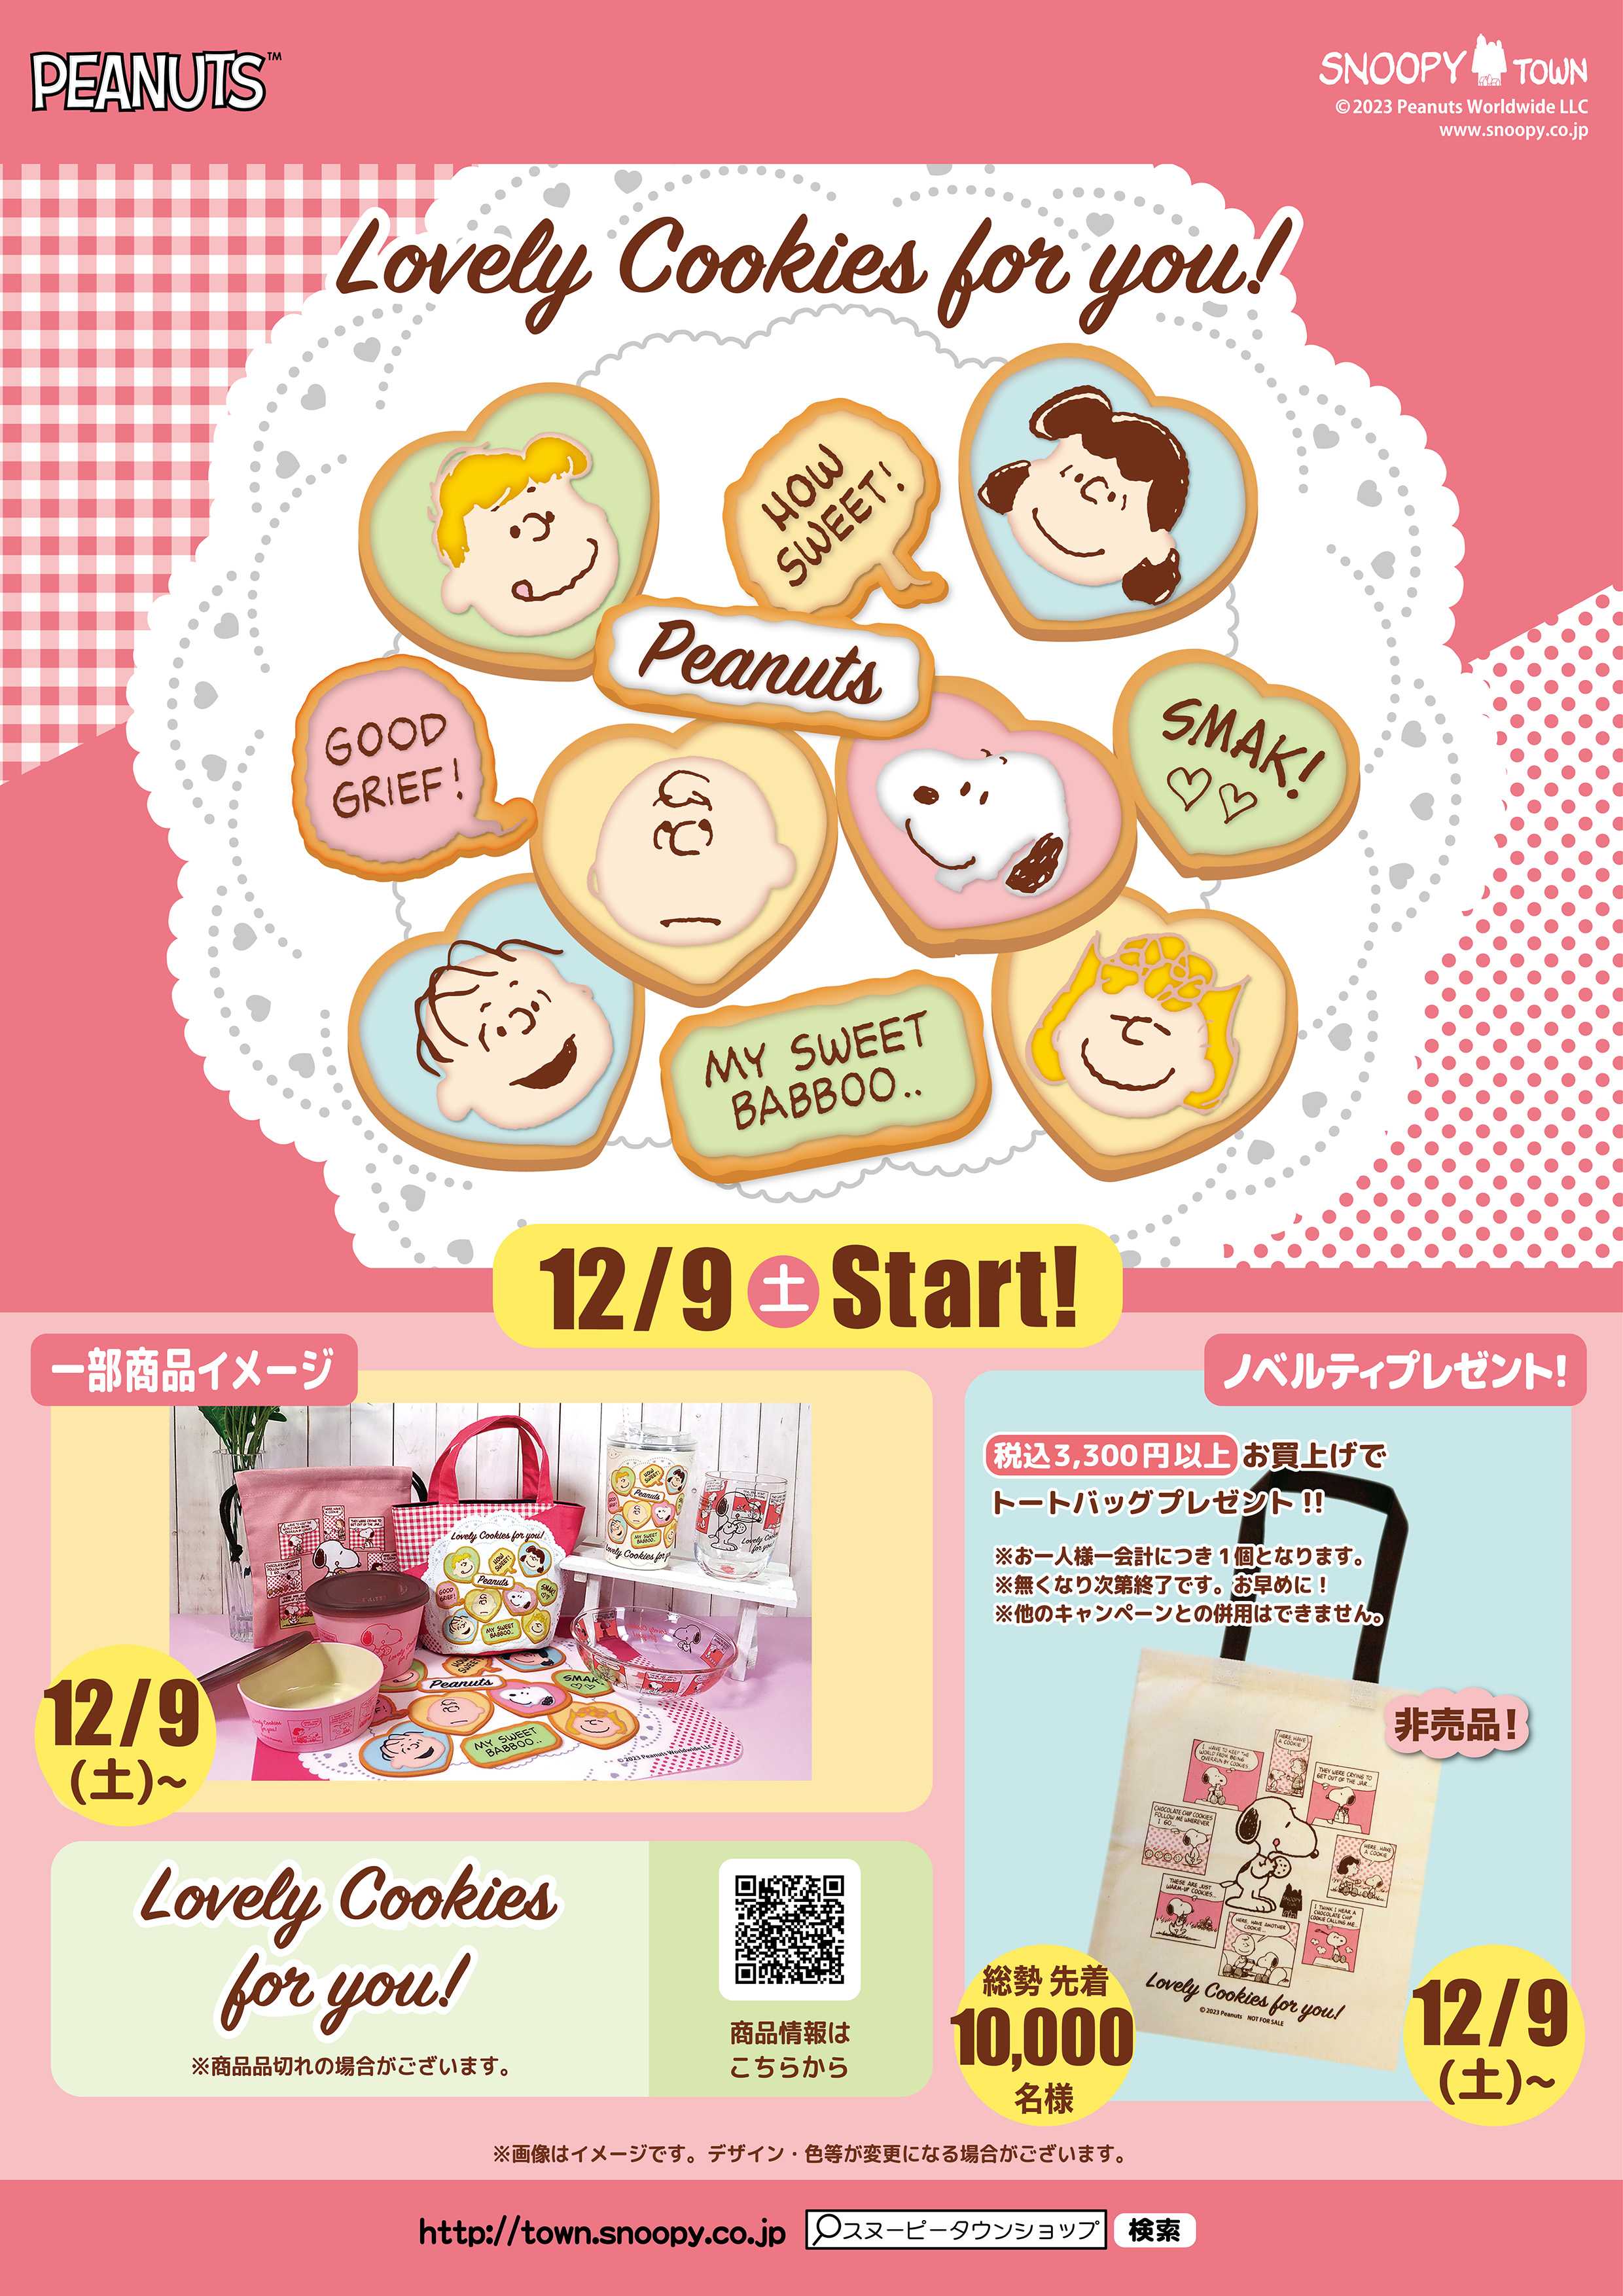 12月9日(土)発売予定 「Lovely Cookies for you！」 | スヌーピー ...